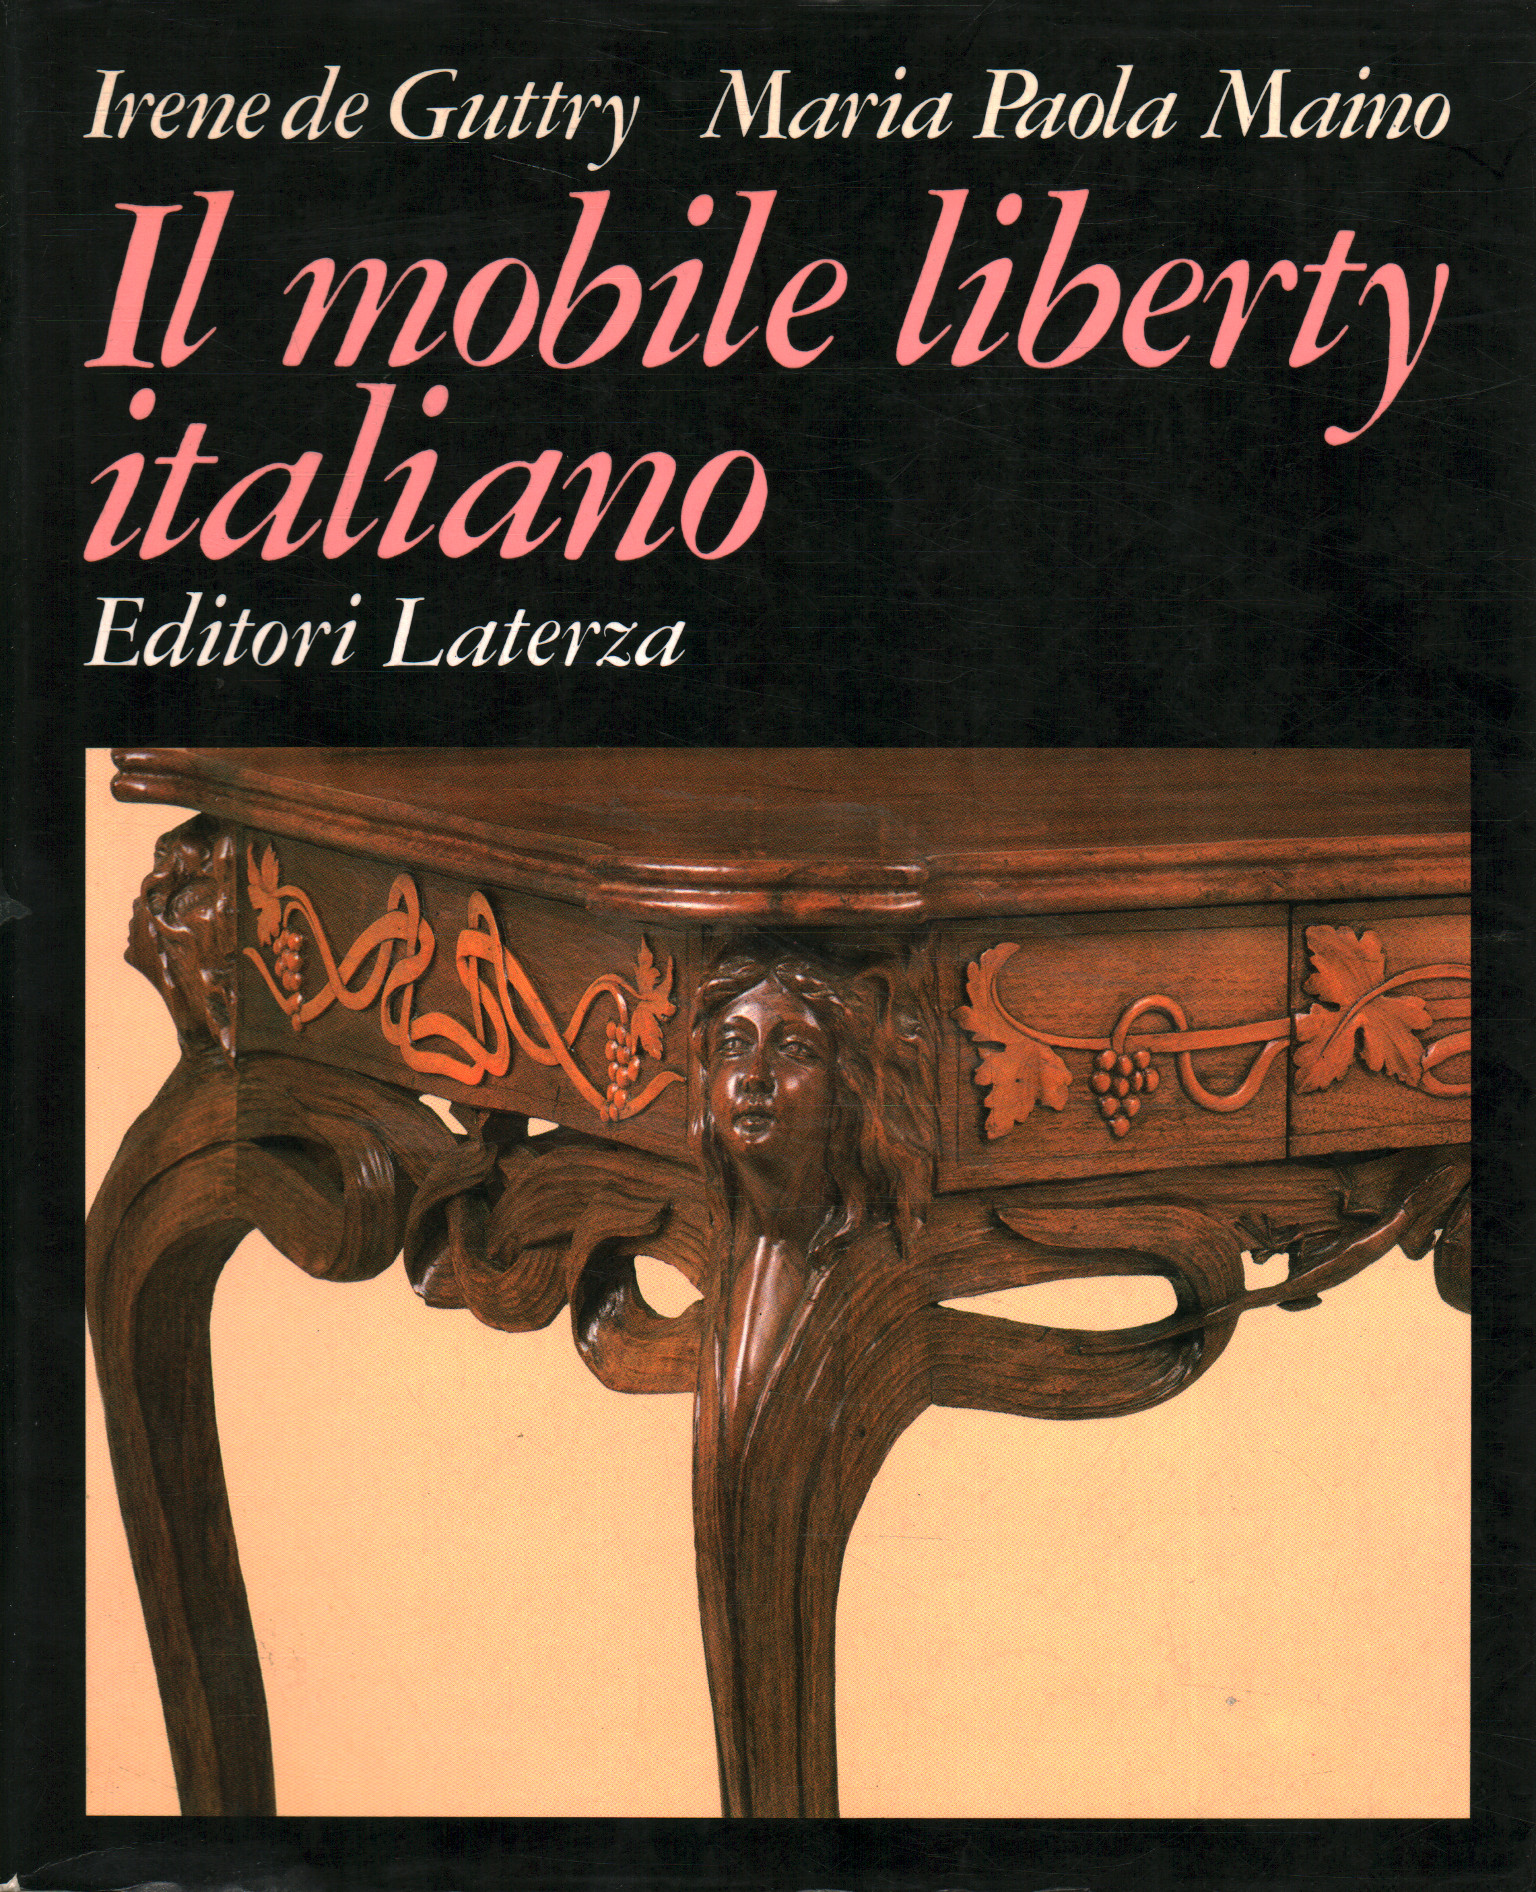 The Italian liberty furniture